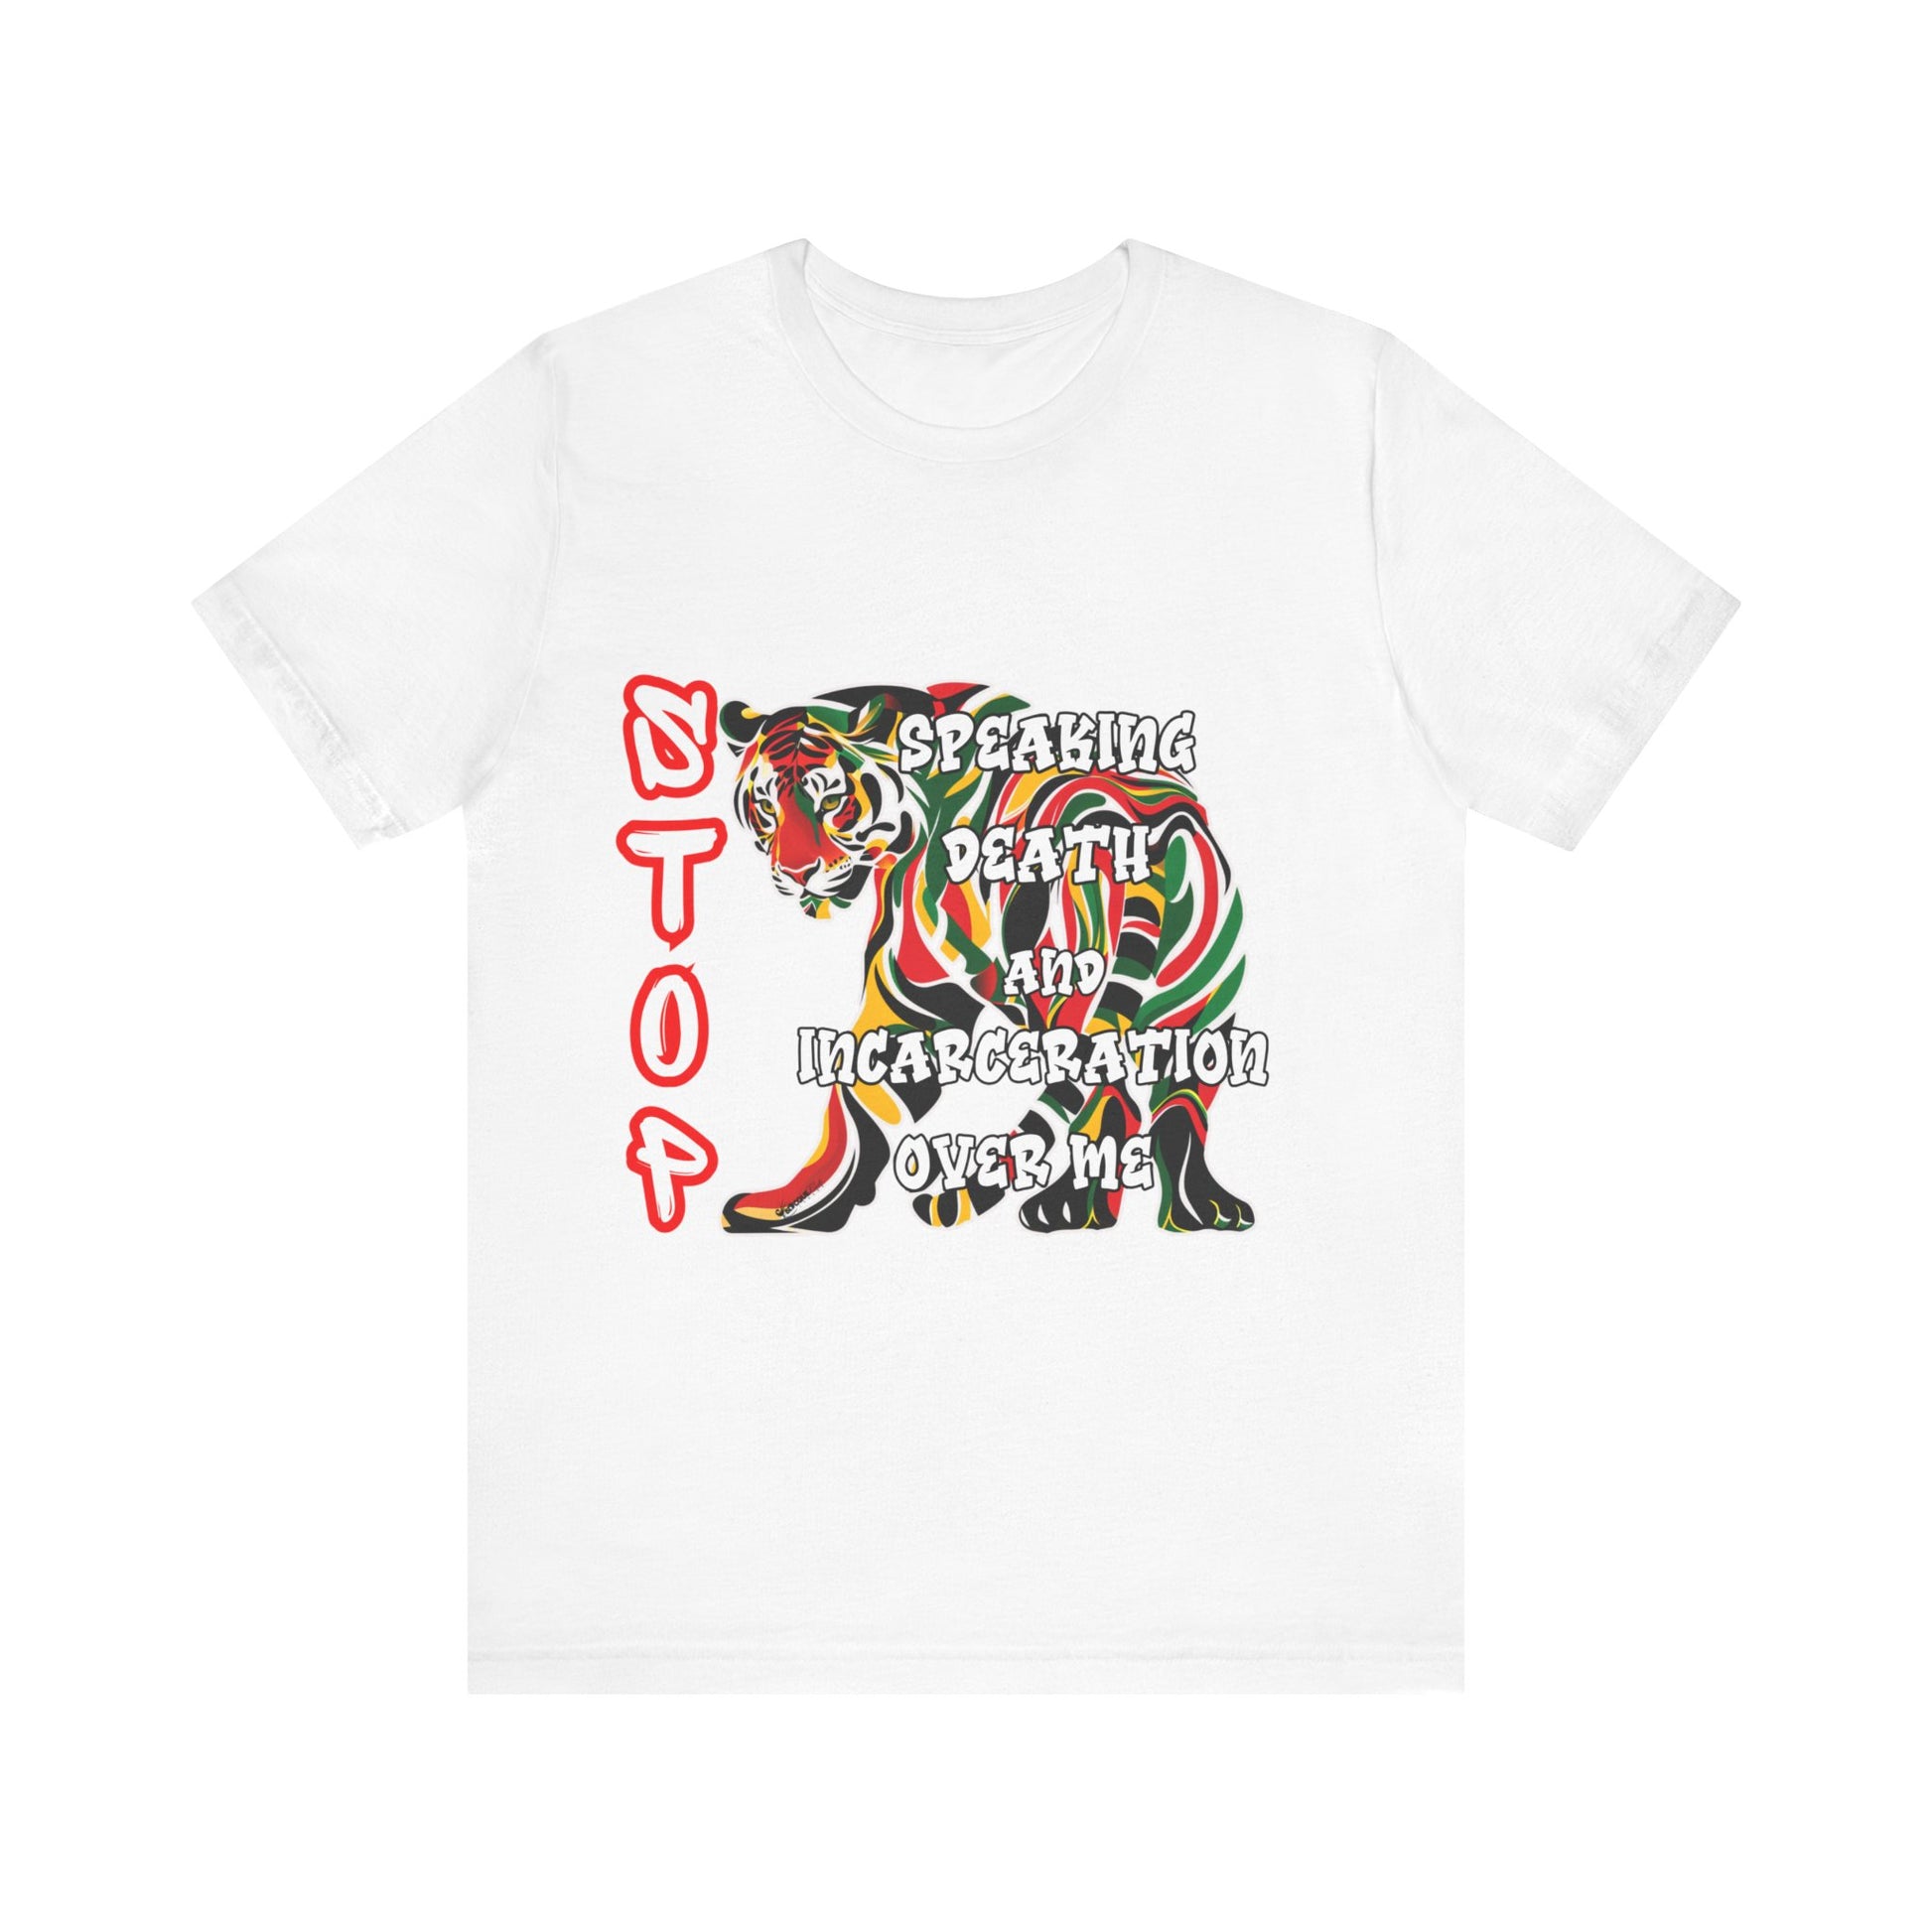 Stop Speaking Death Tee Shirt - Pan-African Tiger Art, Empowering Message Shirt, white tee shirt